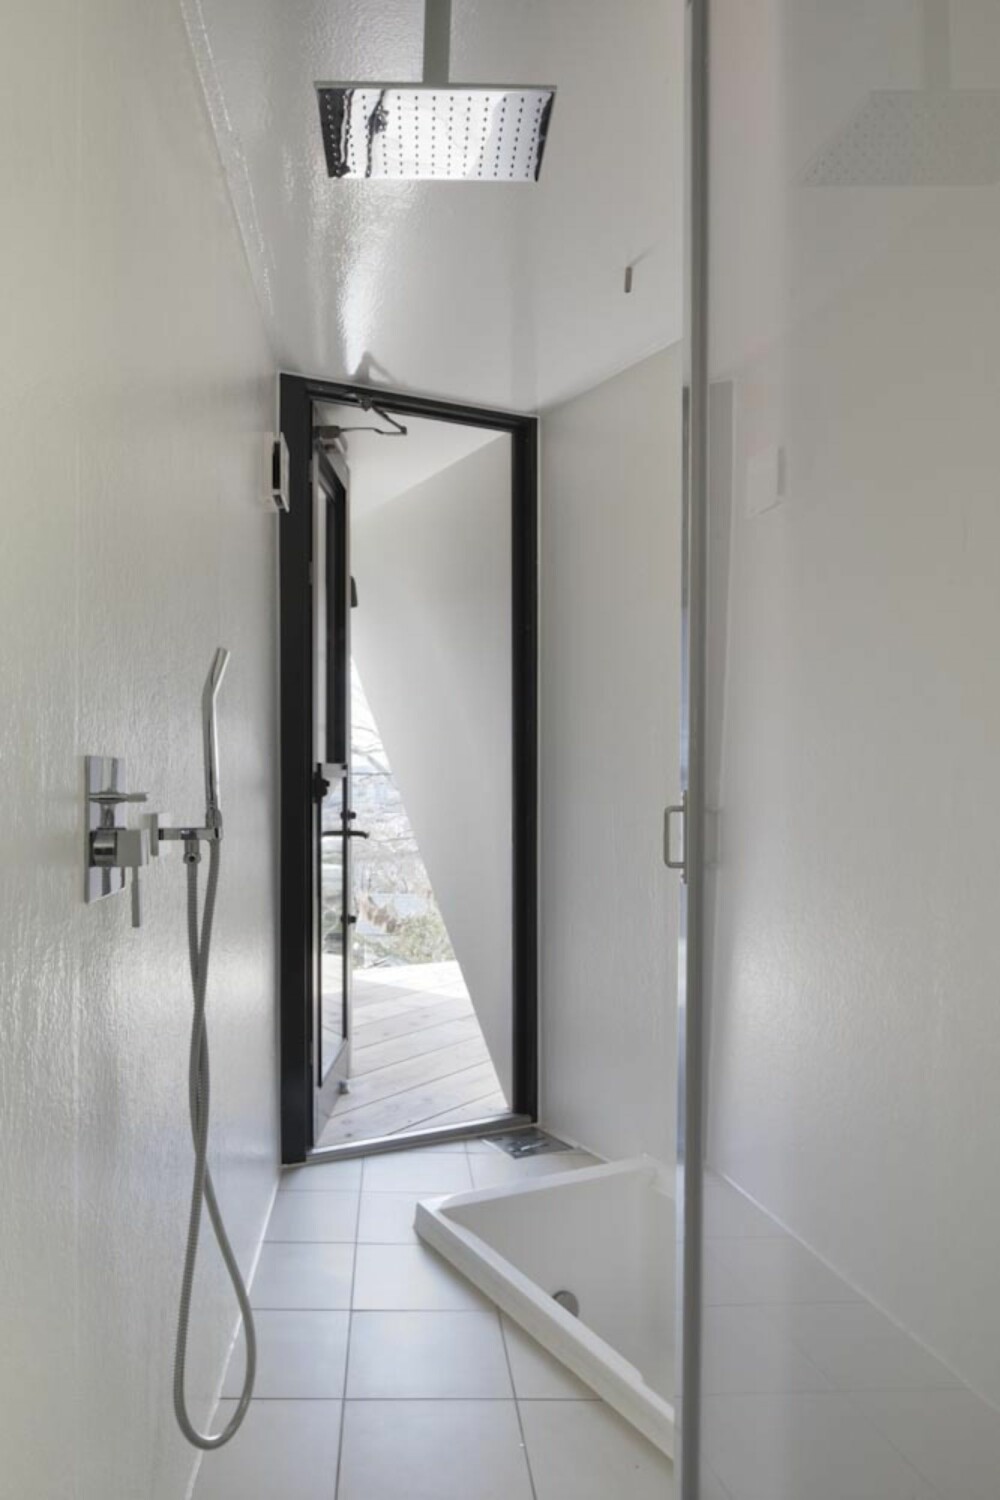 BADET: Skarpe vinkler og stram design råder også på badet, som er det eneste rommet med vegger i boligen.